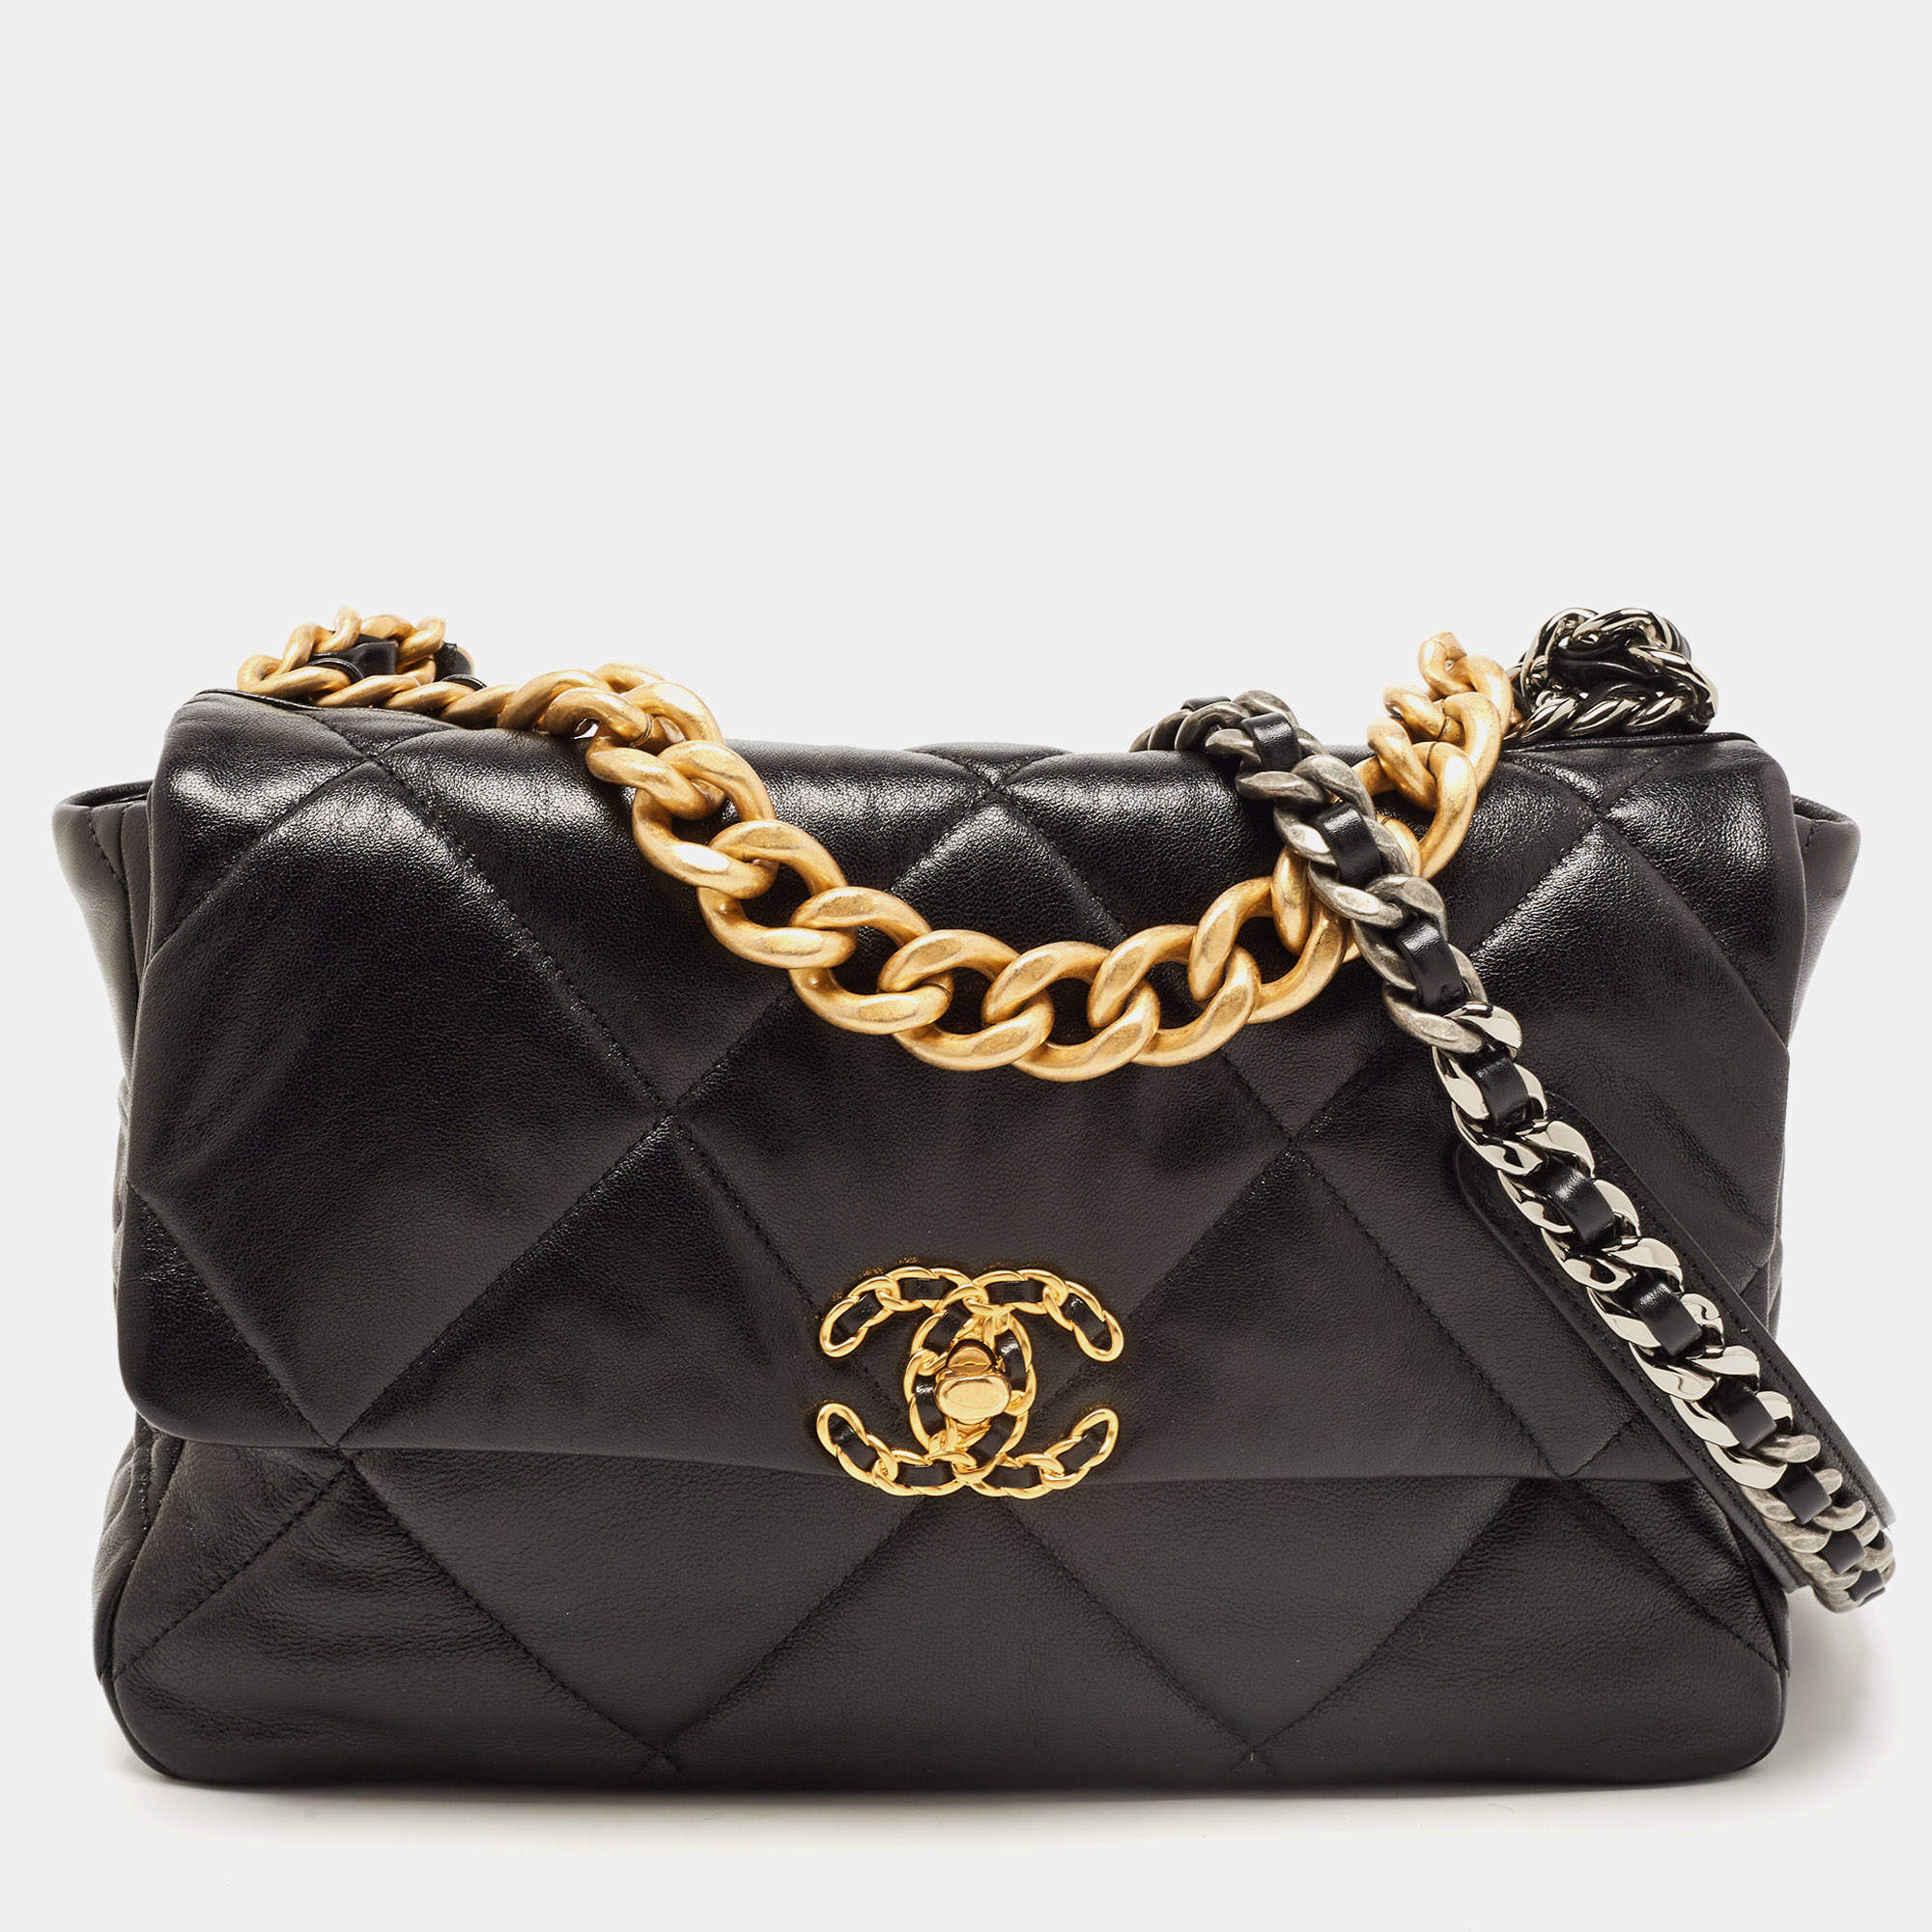 Chanel Black Leather Chanel 19 Flap Shoulder Bag Chanel